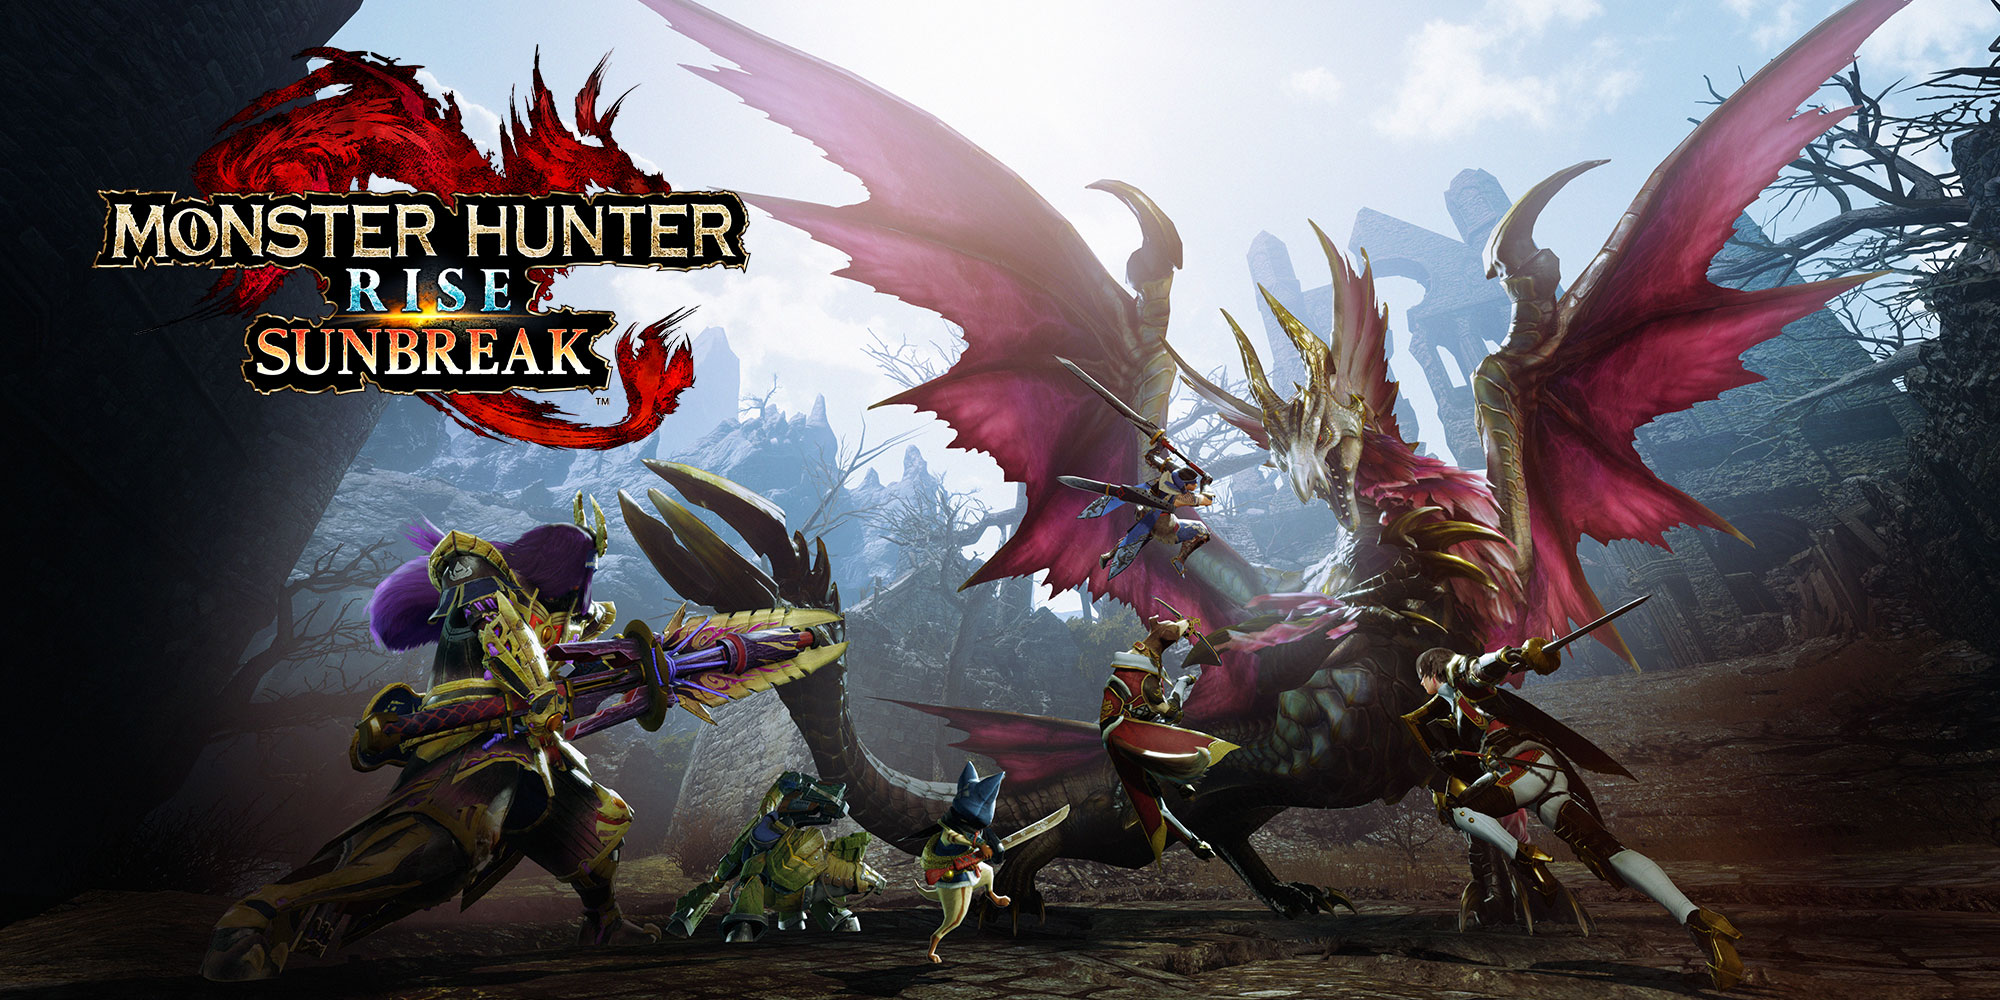 capcom anuncia Monster Hunter Rise: tamanho do Sunbreak e pré-requisitos para acessar novo conteúdo